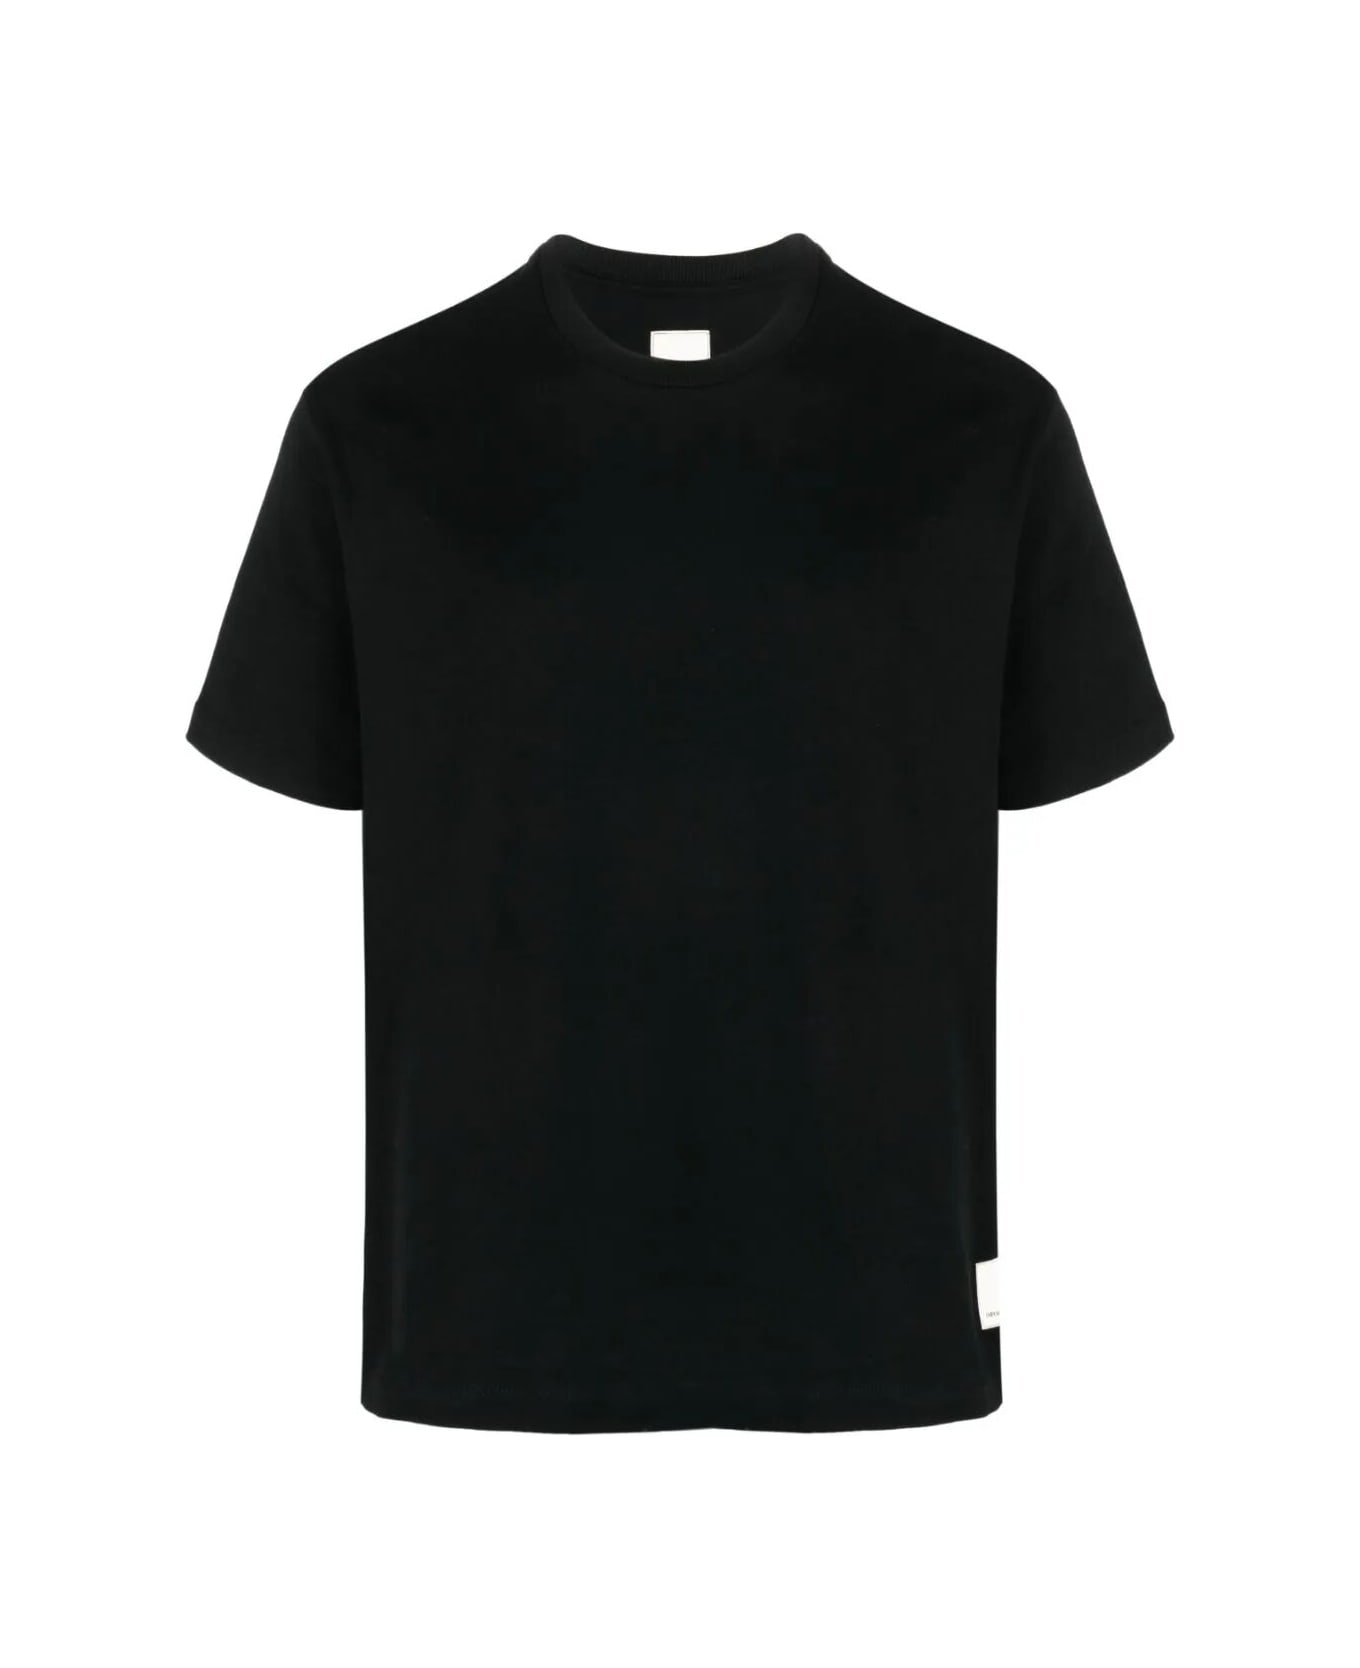 Emporio Armani T-shirt - Black Label シャツ